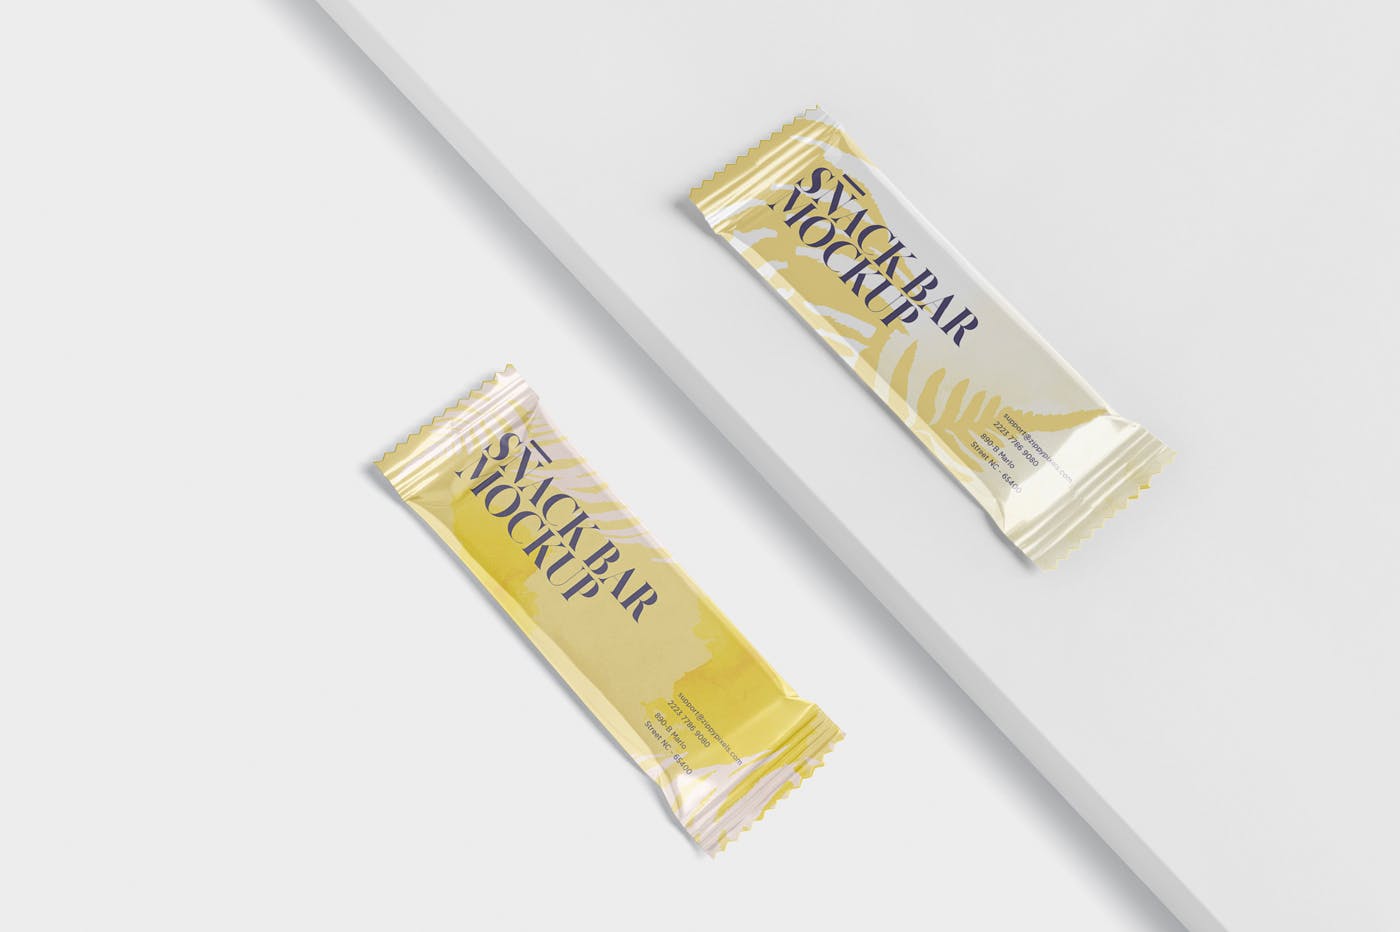 零食糖果包装袋设计效果图第一素材精选 Snack Bar Mockup – Slim Rectangular插图(4)